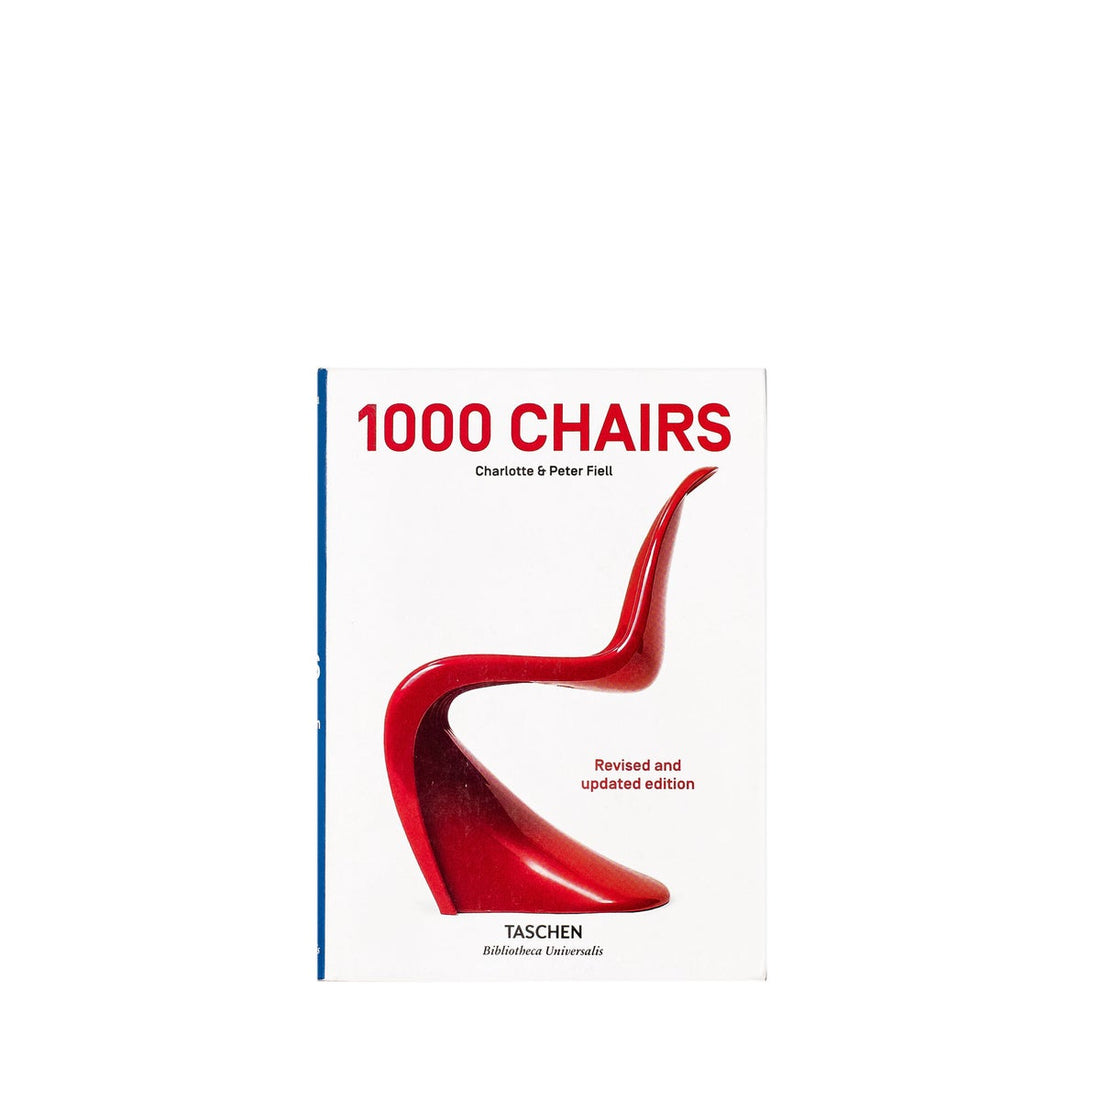 TASCHEN - 1000 CHAIRS BOOK